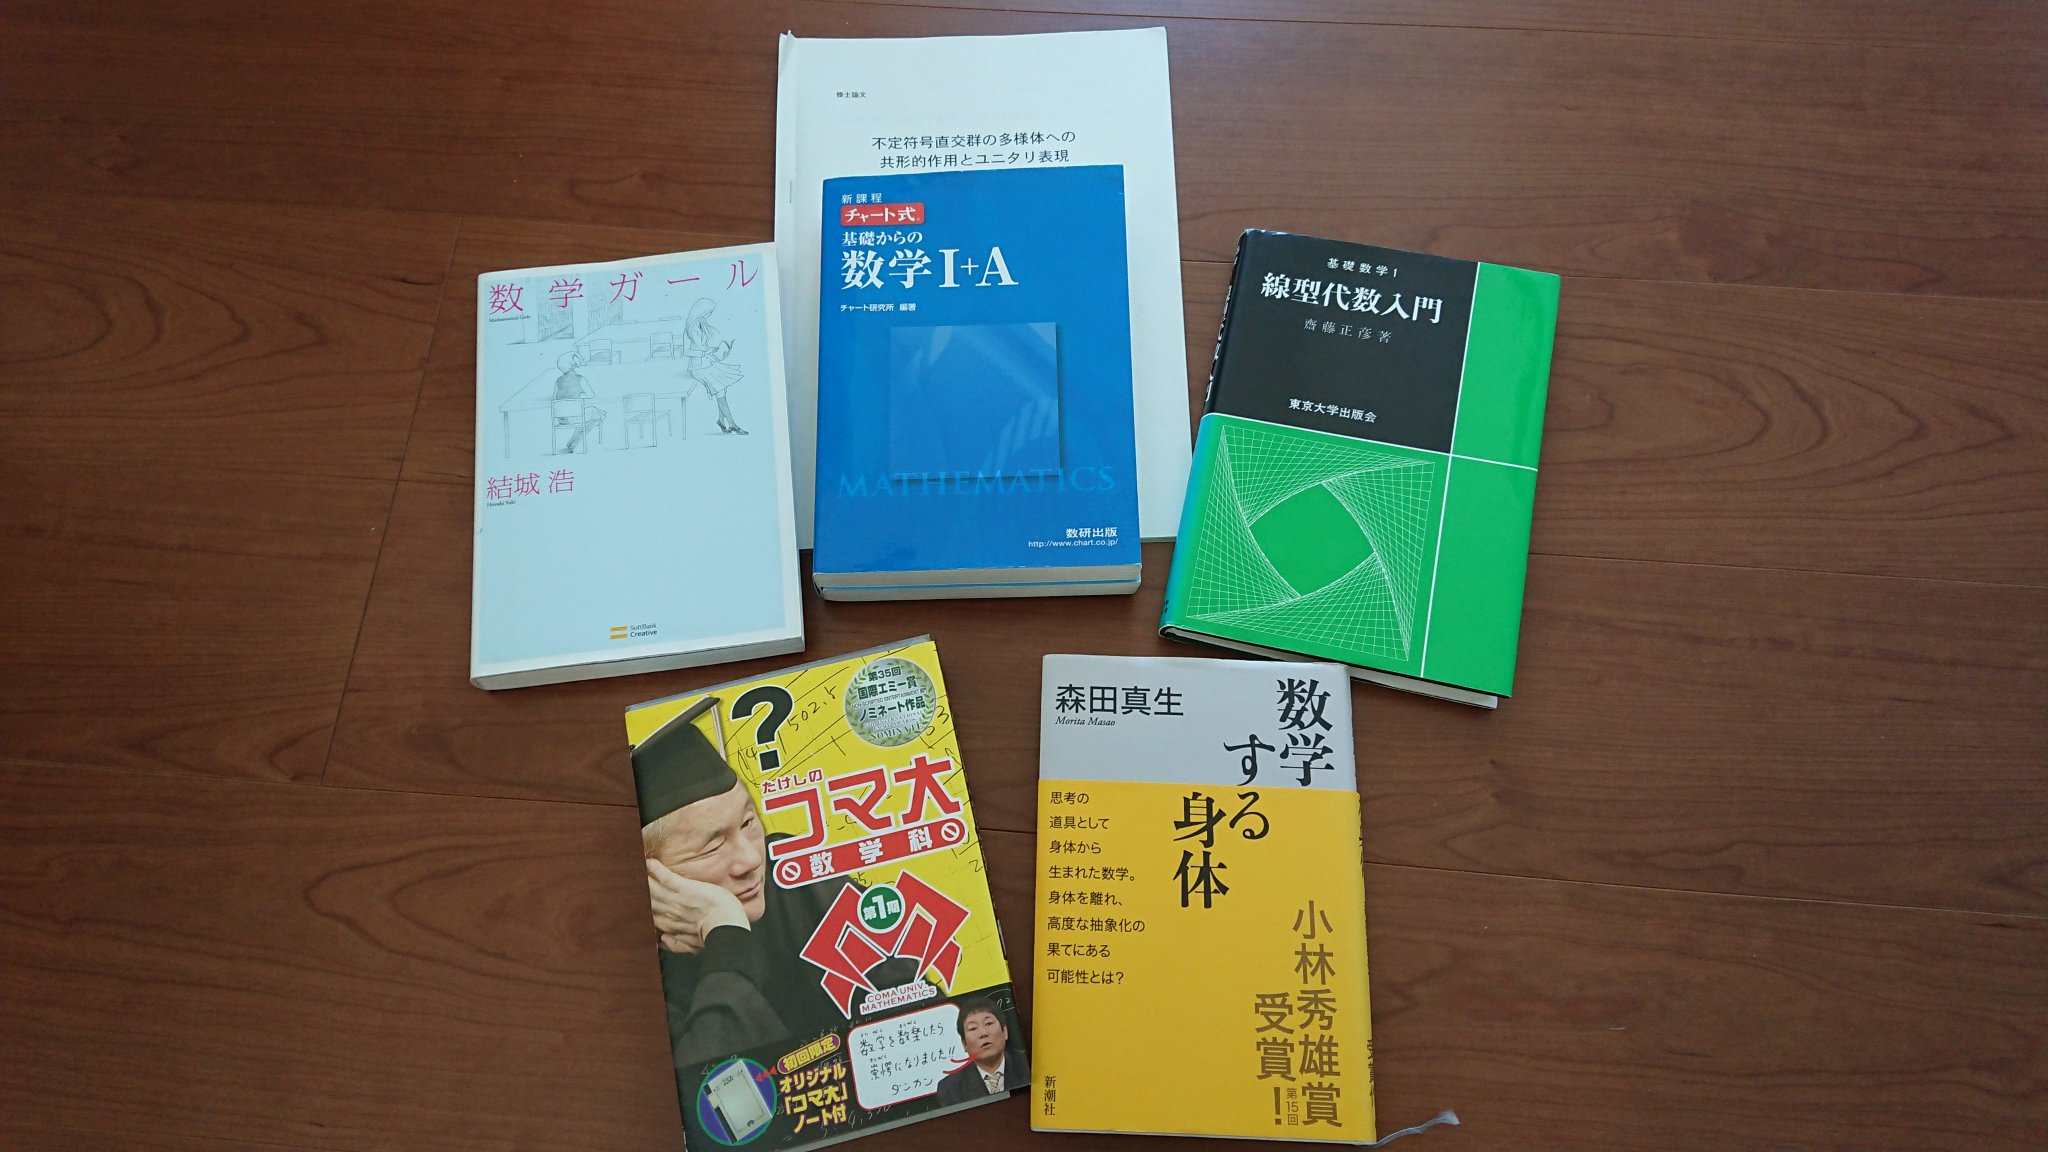 大学への数学シリーズ。研文書院